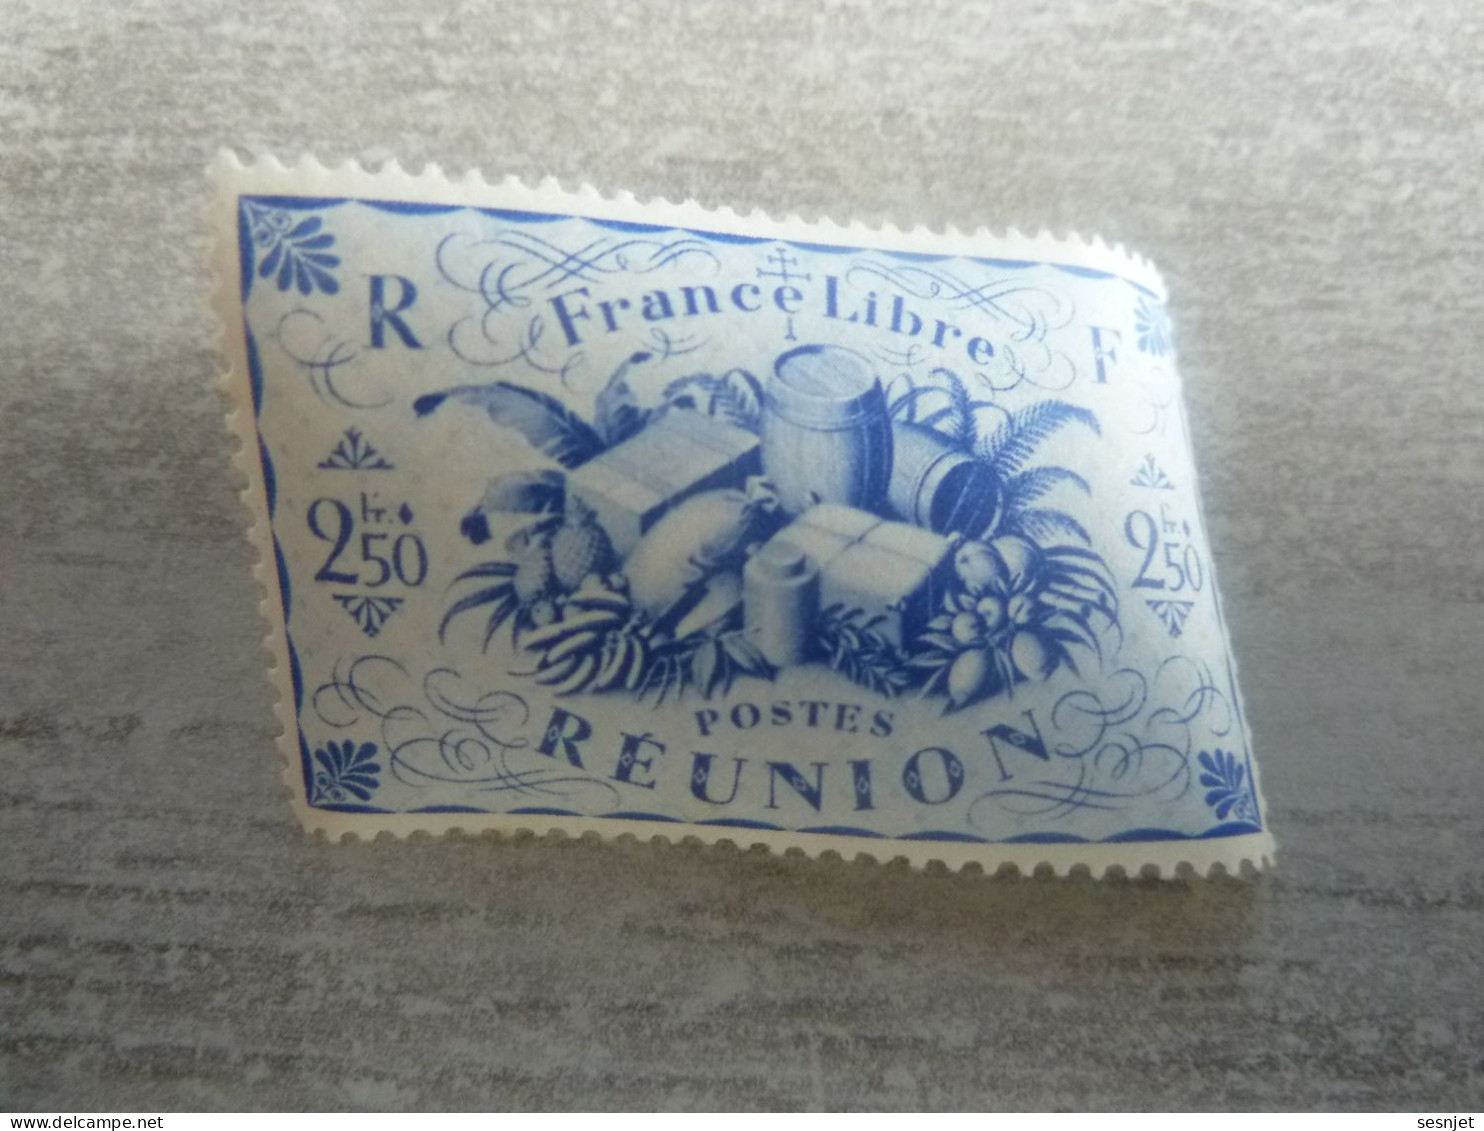 Série De Londres - France-Libre - Réunion  - 2f.50 - Yt 242 - Outremer - Neuf Sans Trace De Charnière - Année 1943 - - Nuevos